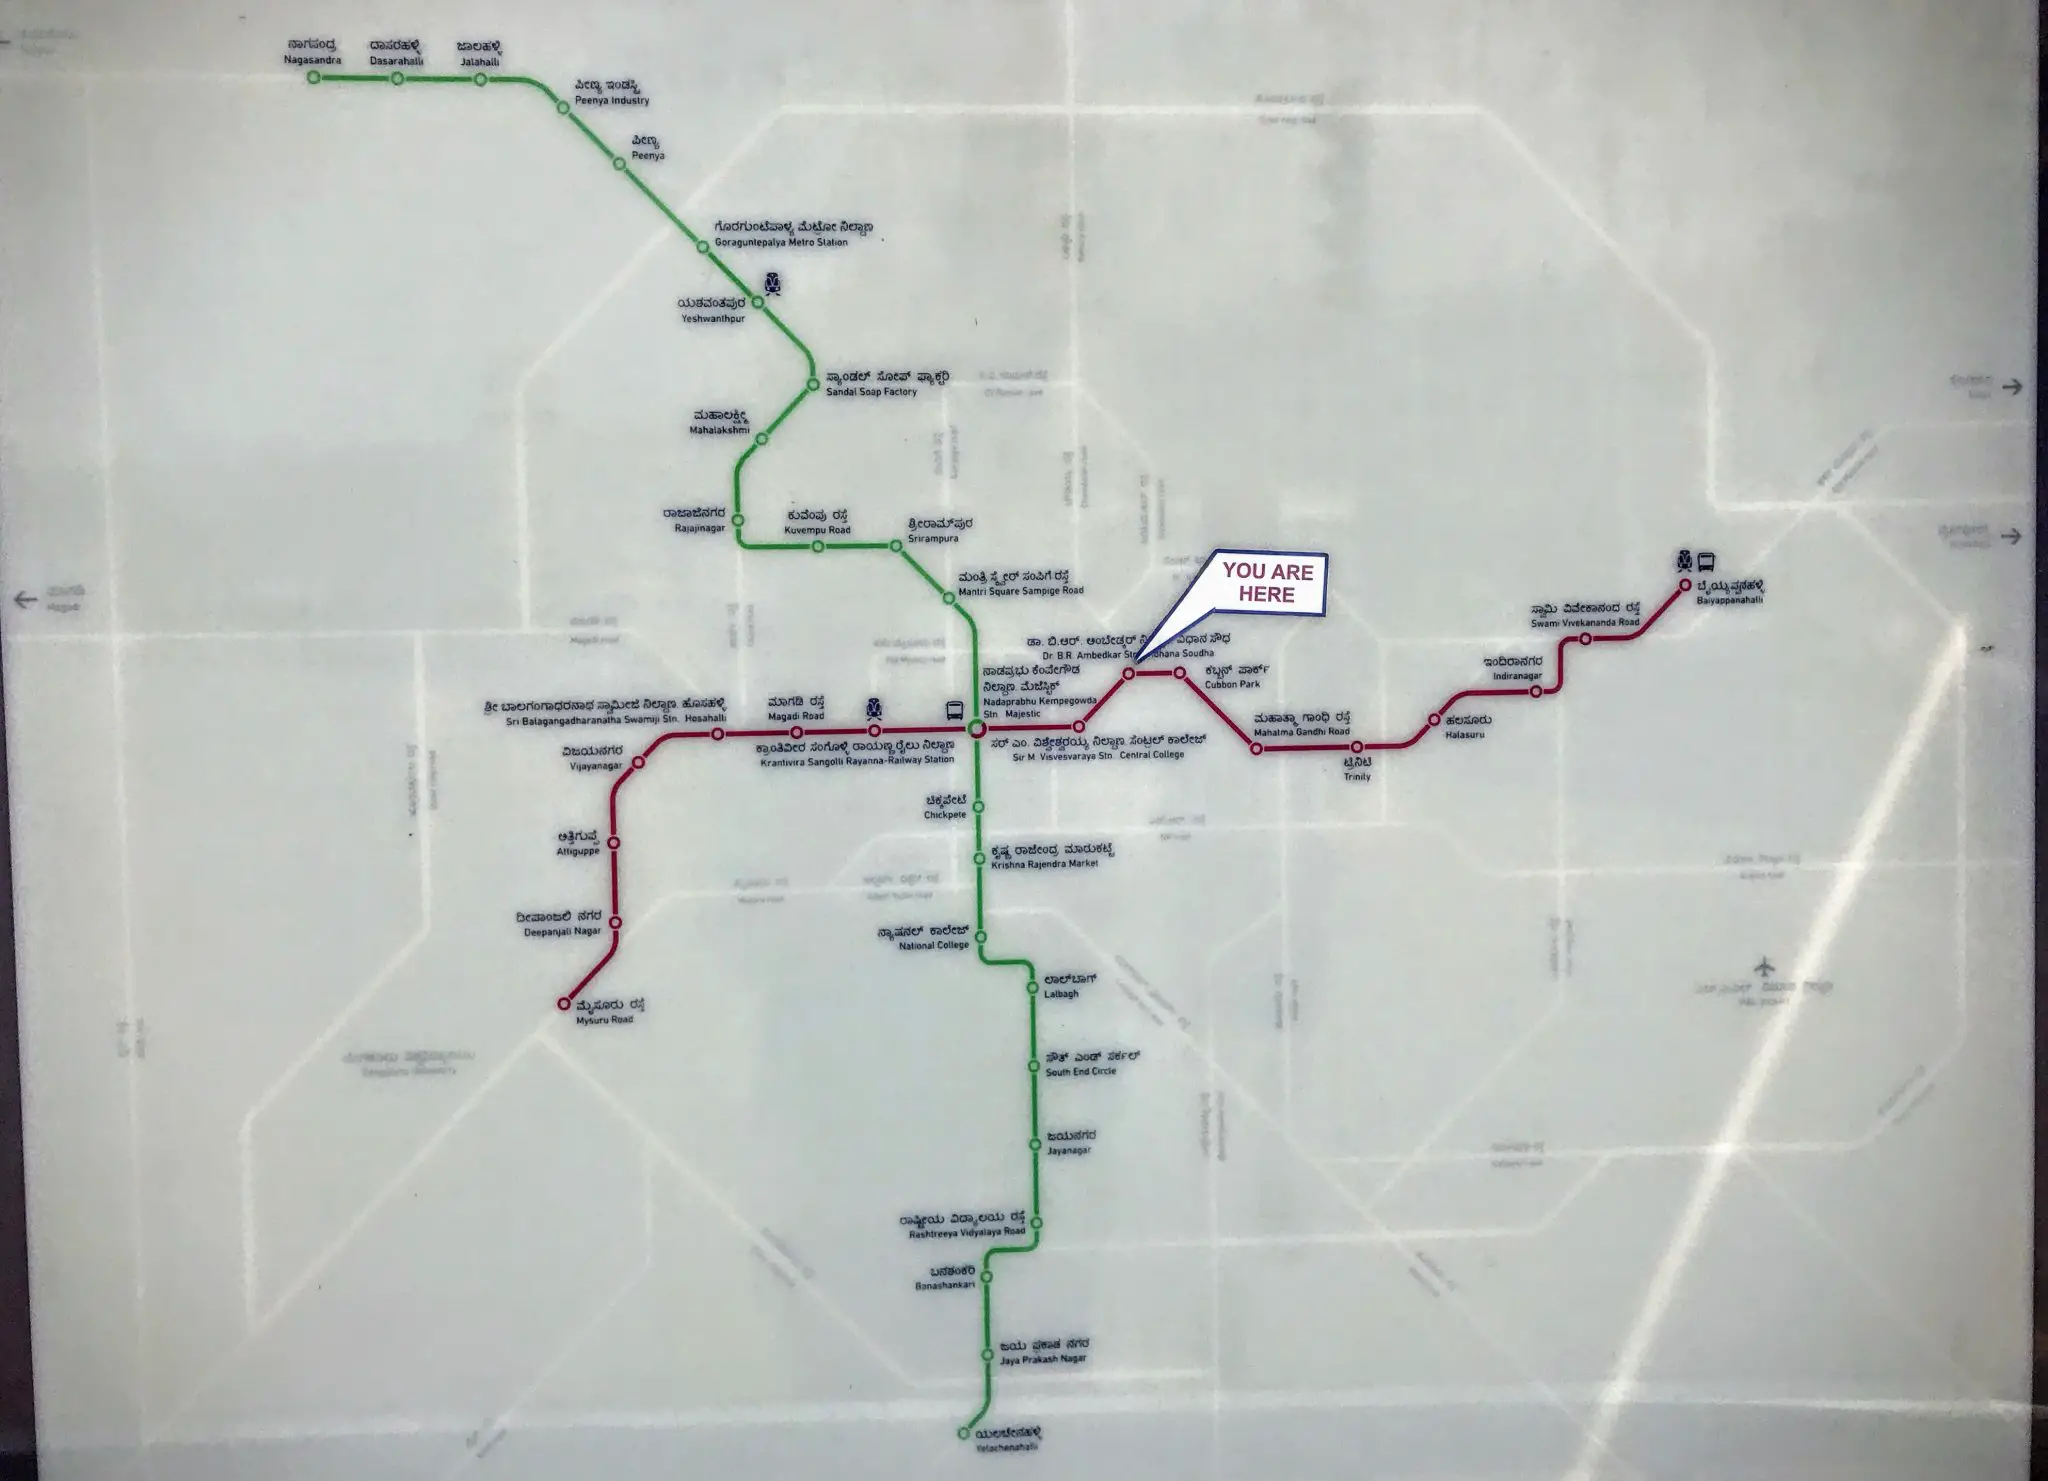 Bangalore metro map